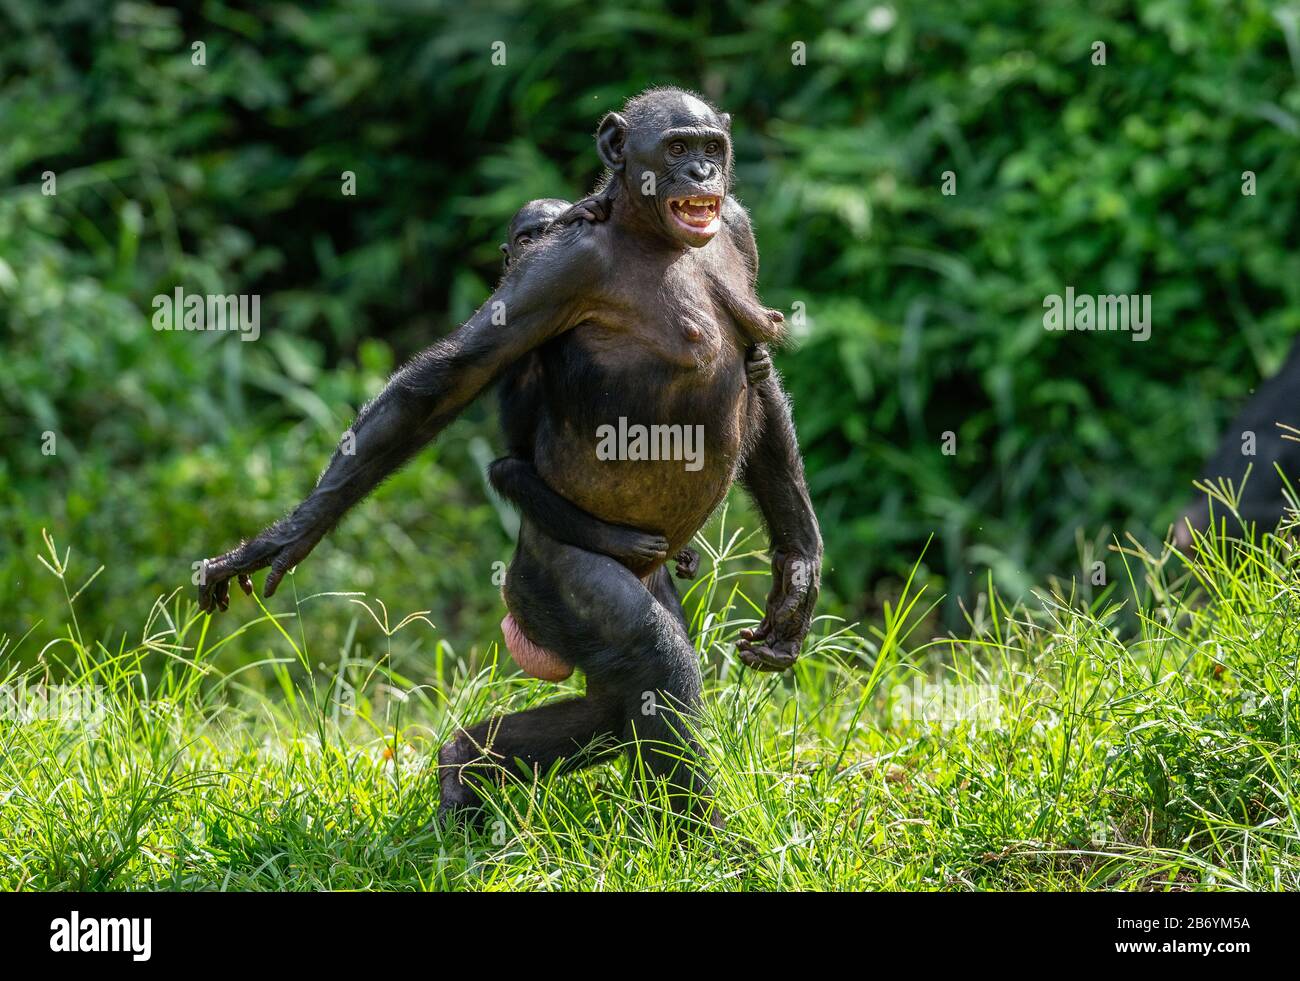 Banobo Bonobo: The